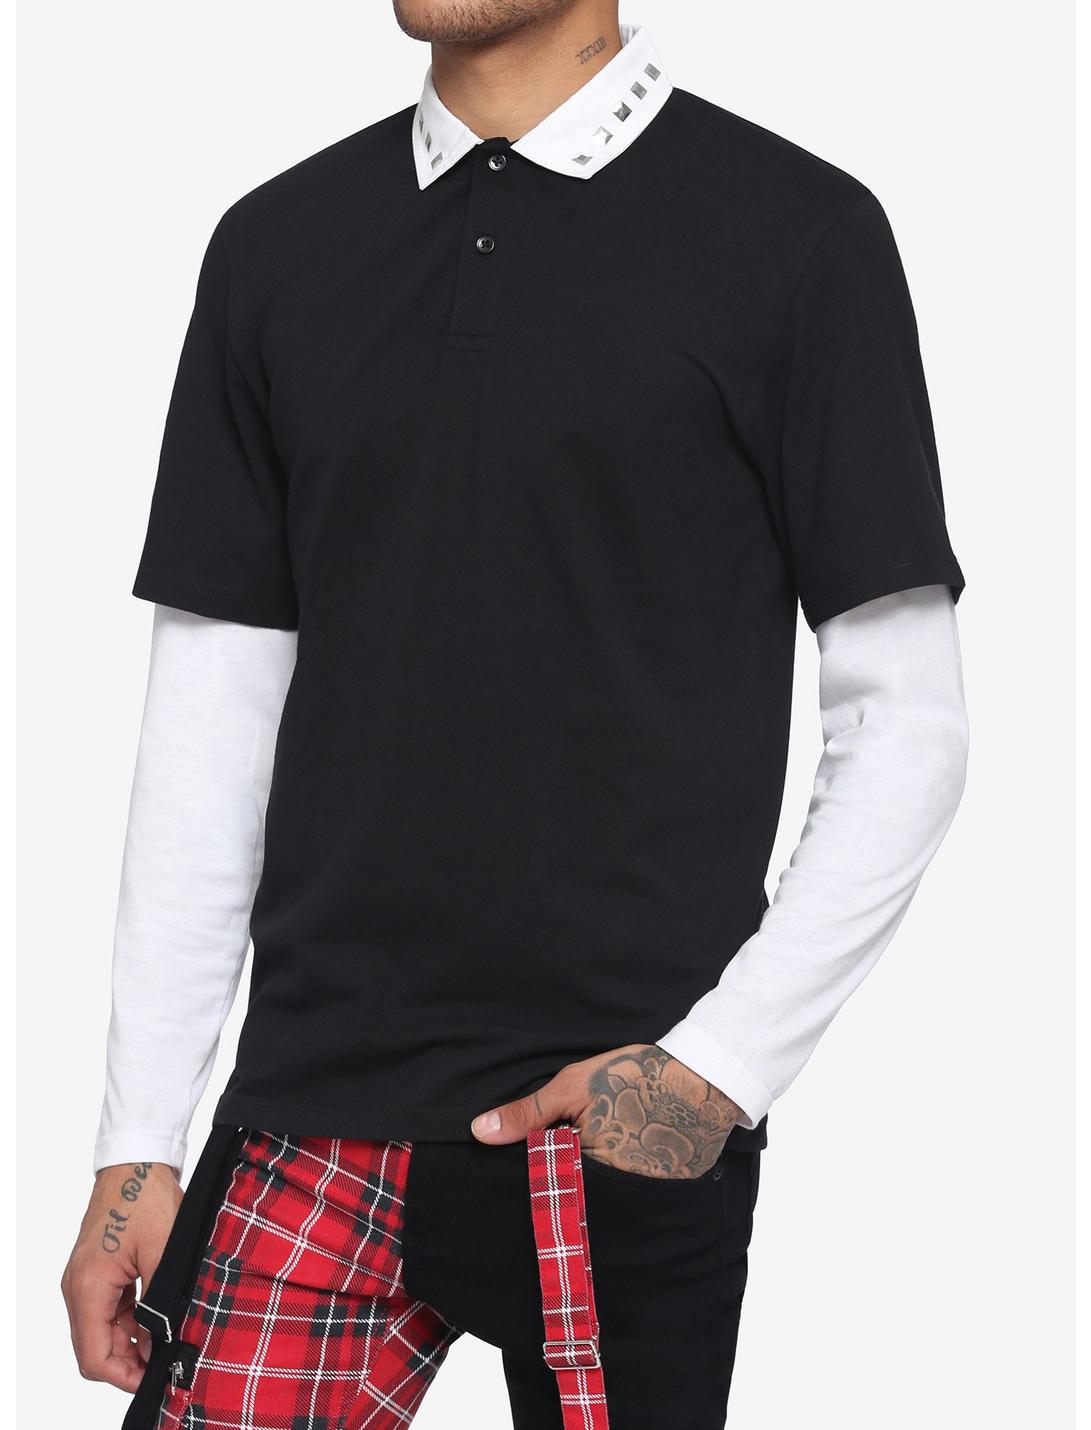 Black & White Studded Collar Twofer Long-Sleeve Shirt, BLACK  WHITE, hi-res